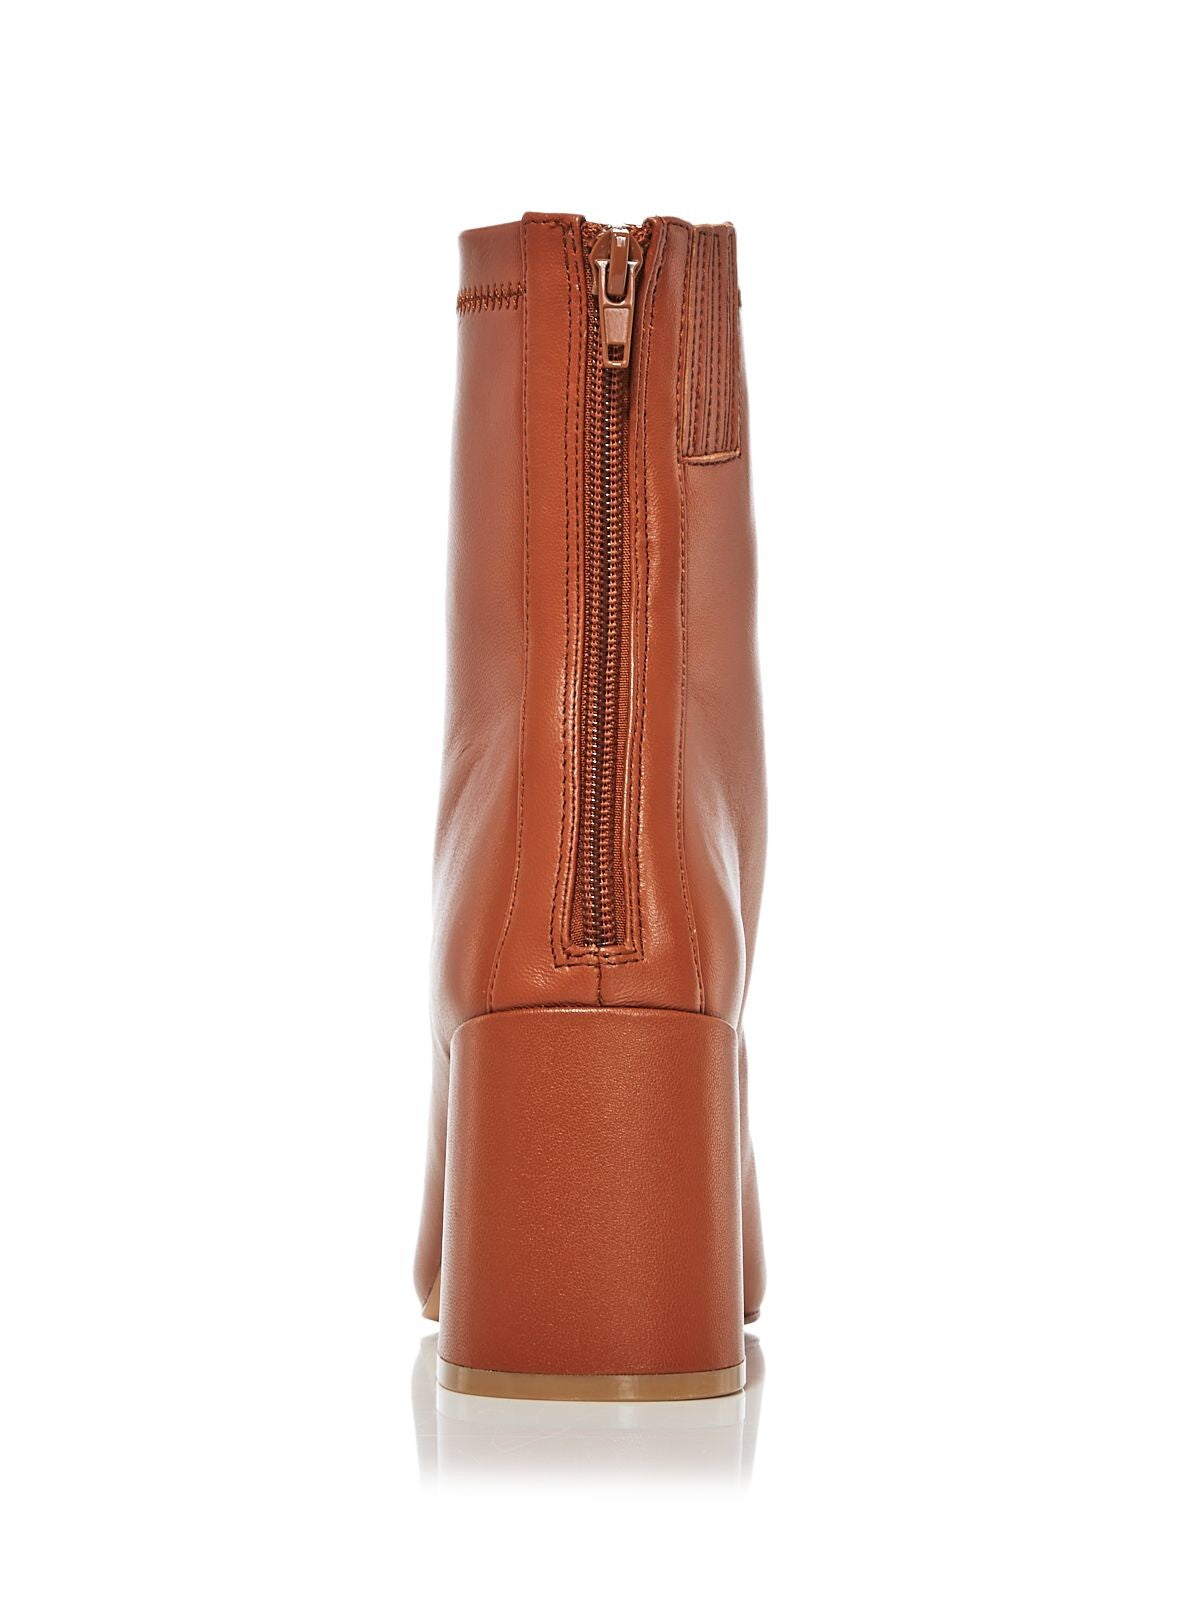 AQUA Womens Brown Comfort Goring Juno Square Toe Block Heel Zip-Up Leather Booties 9 M